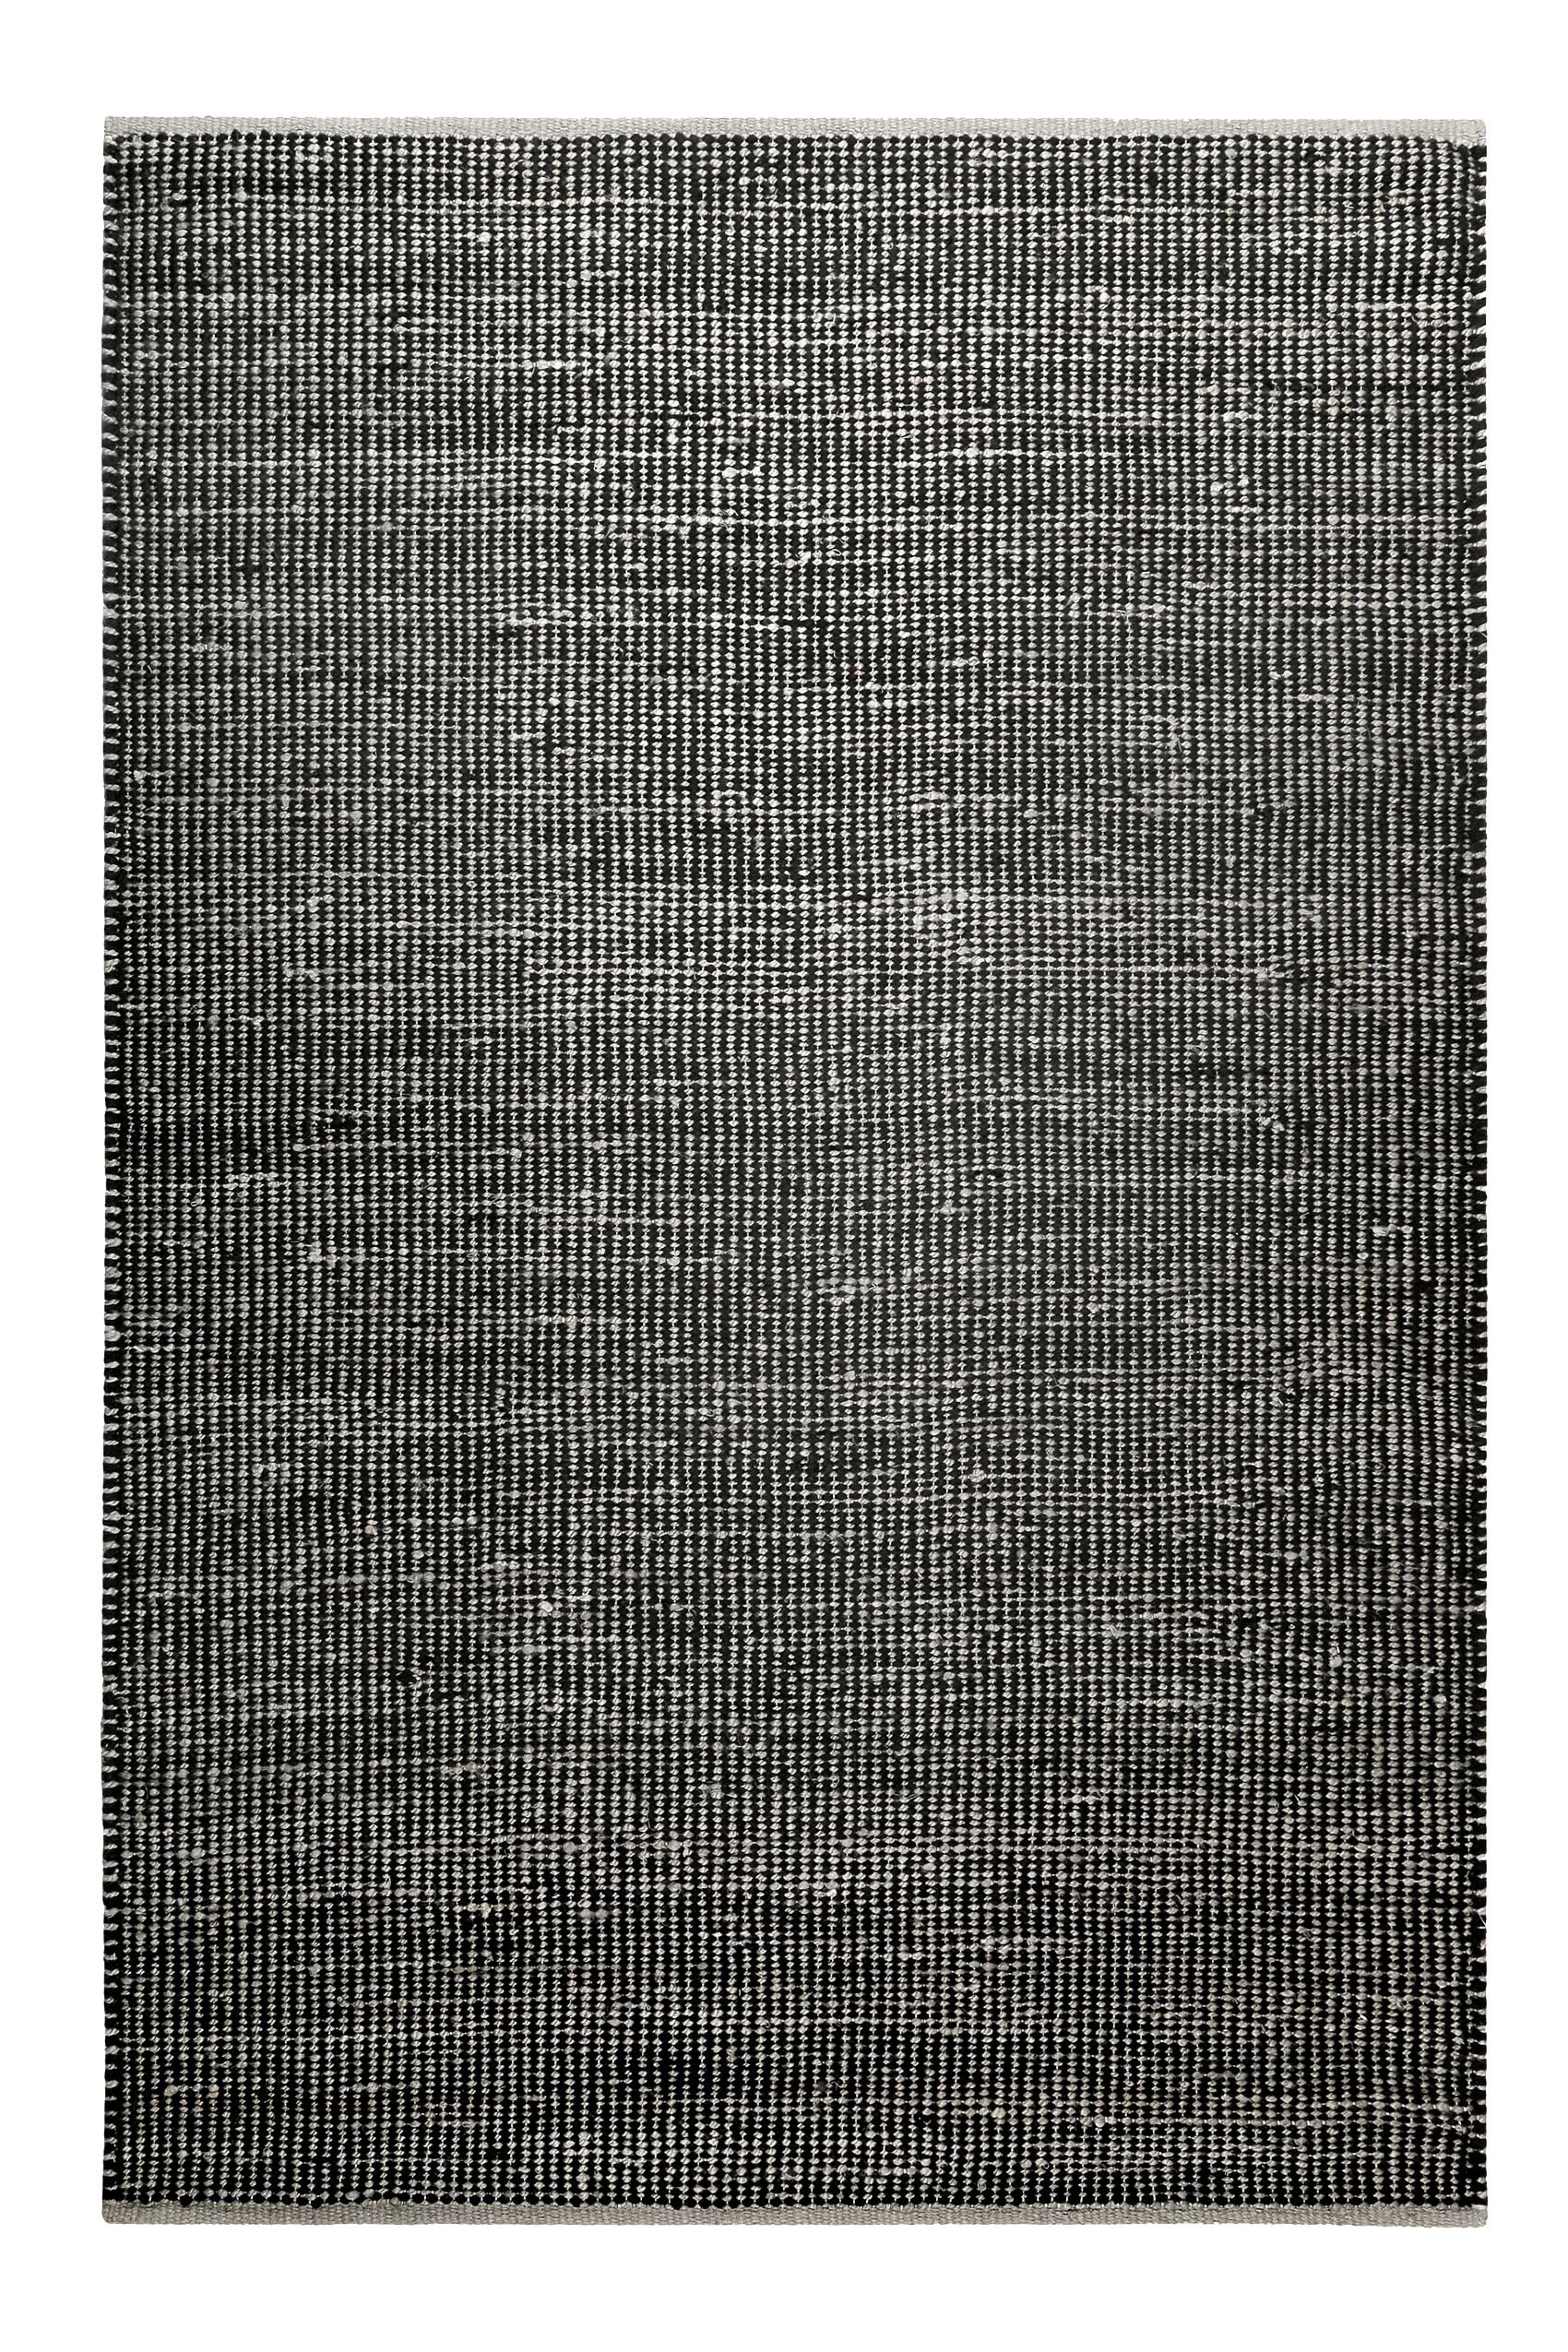 Kelim Teppich Grau Schwarz aus Jute & Wolle » Toulouse « Green Looop - Ansicht 1